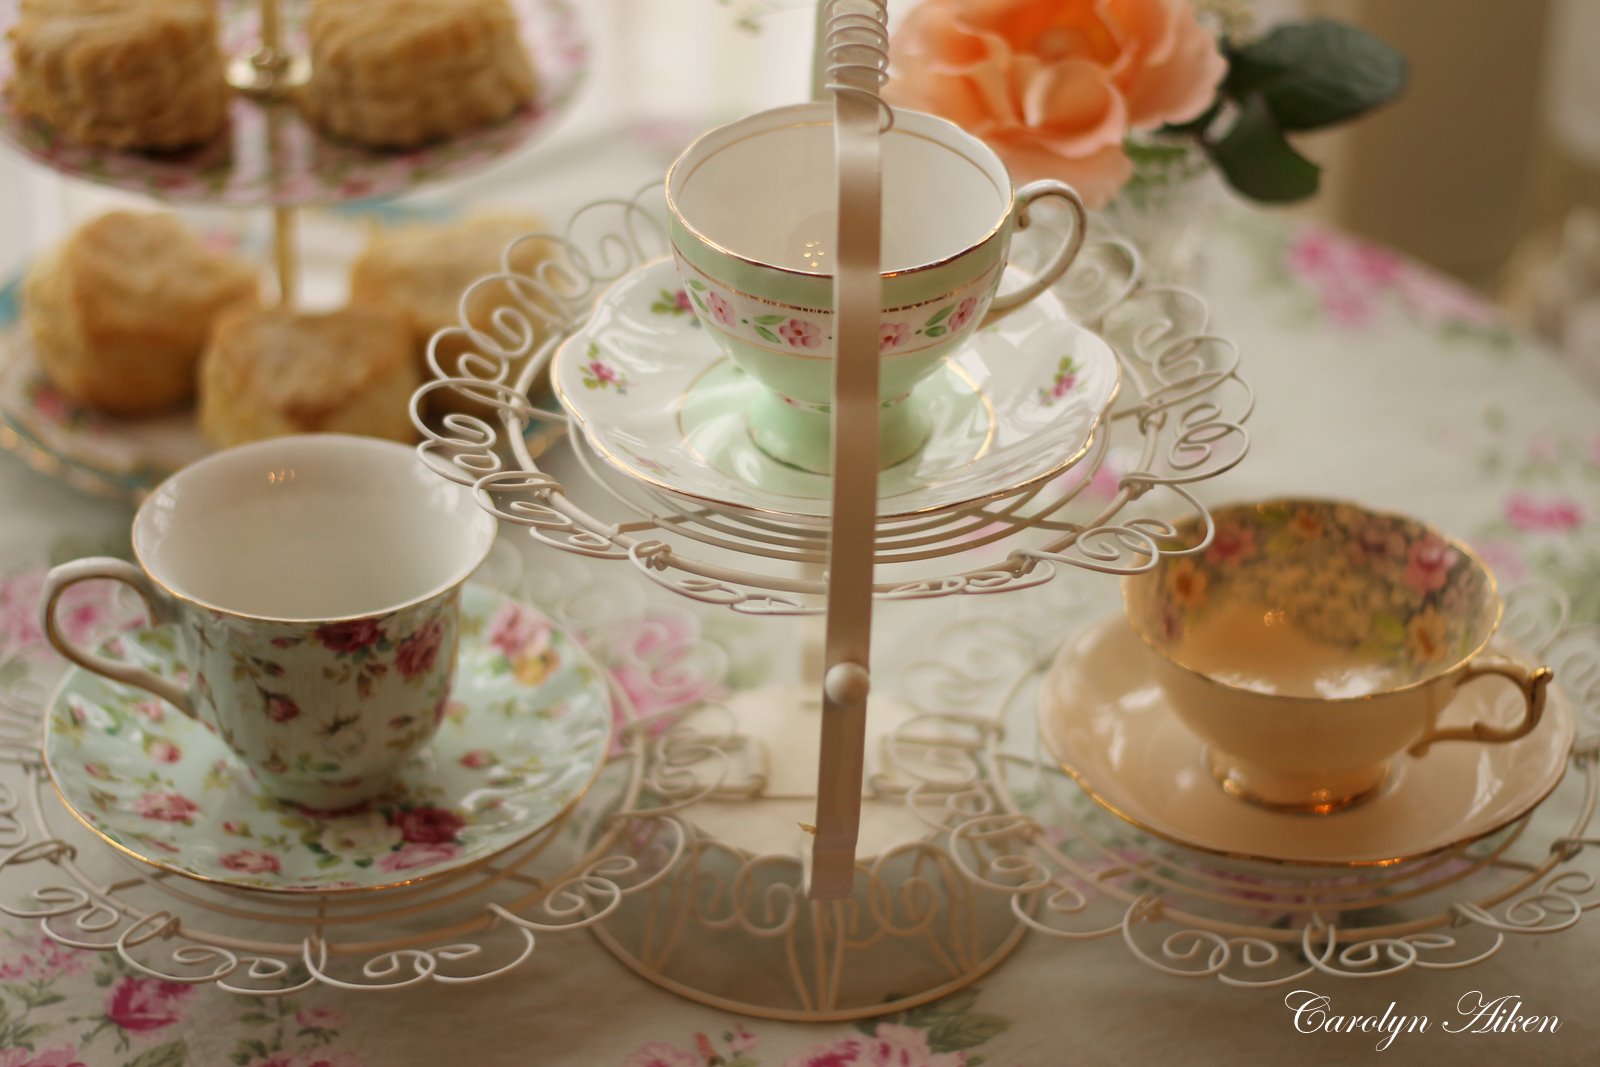 Aiken House & Gardens: Afternoon Tea